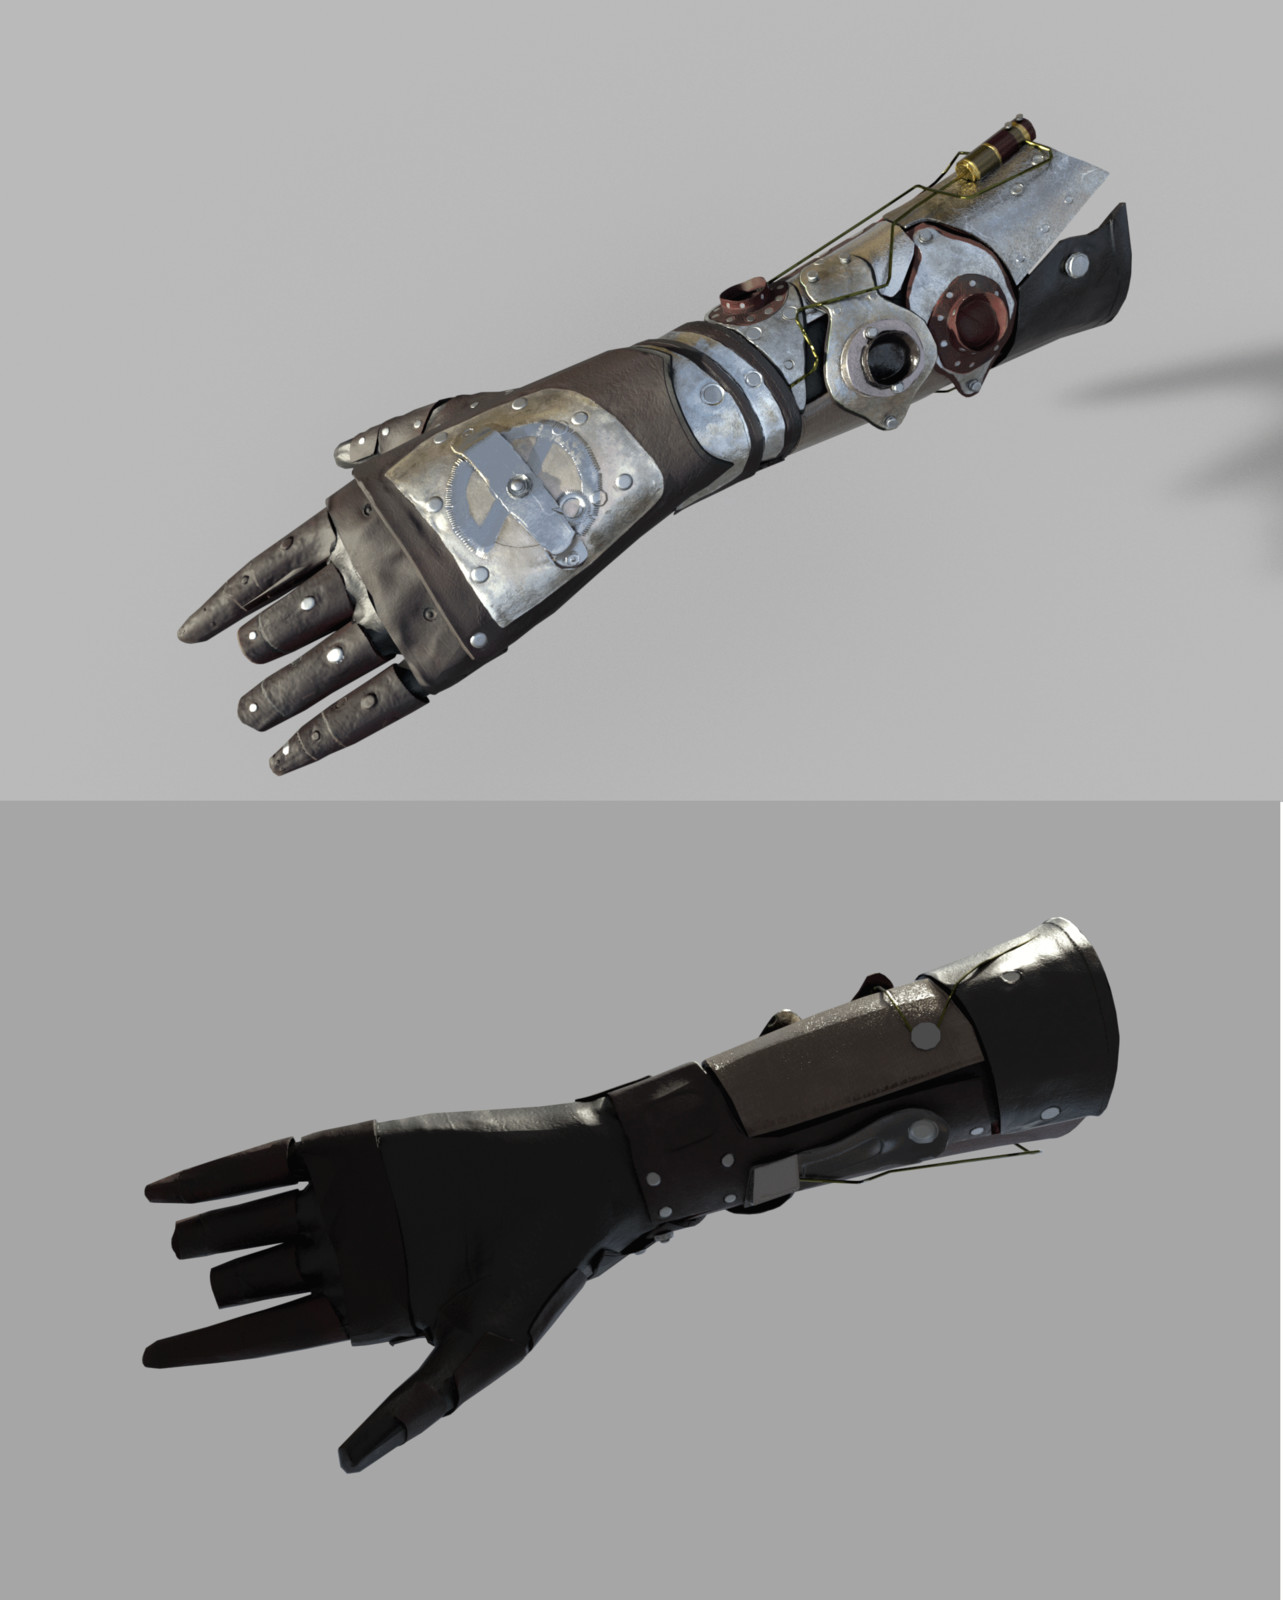 Tech Glove